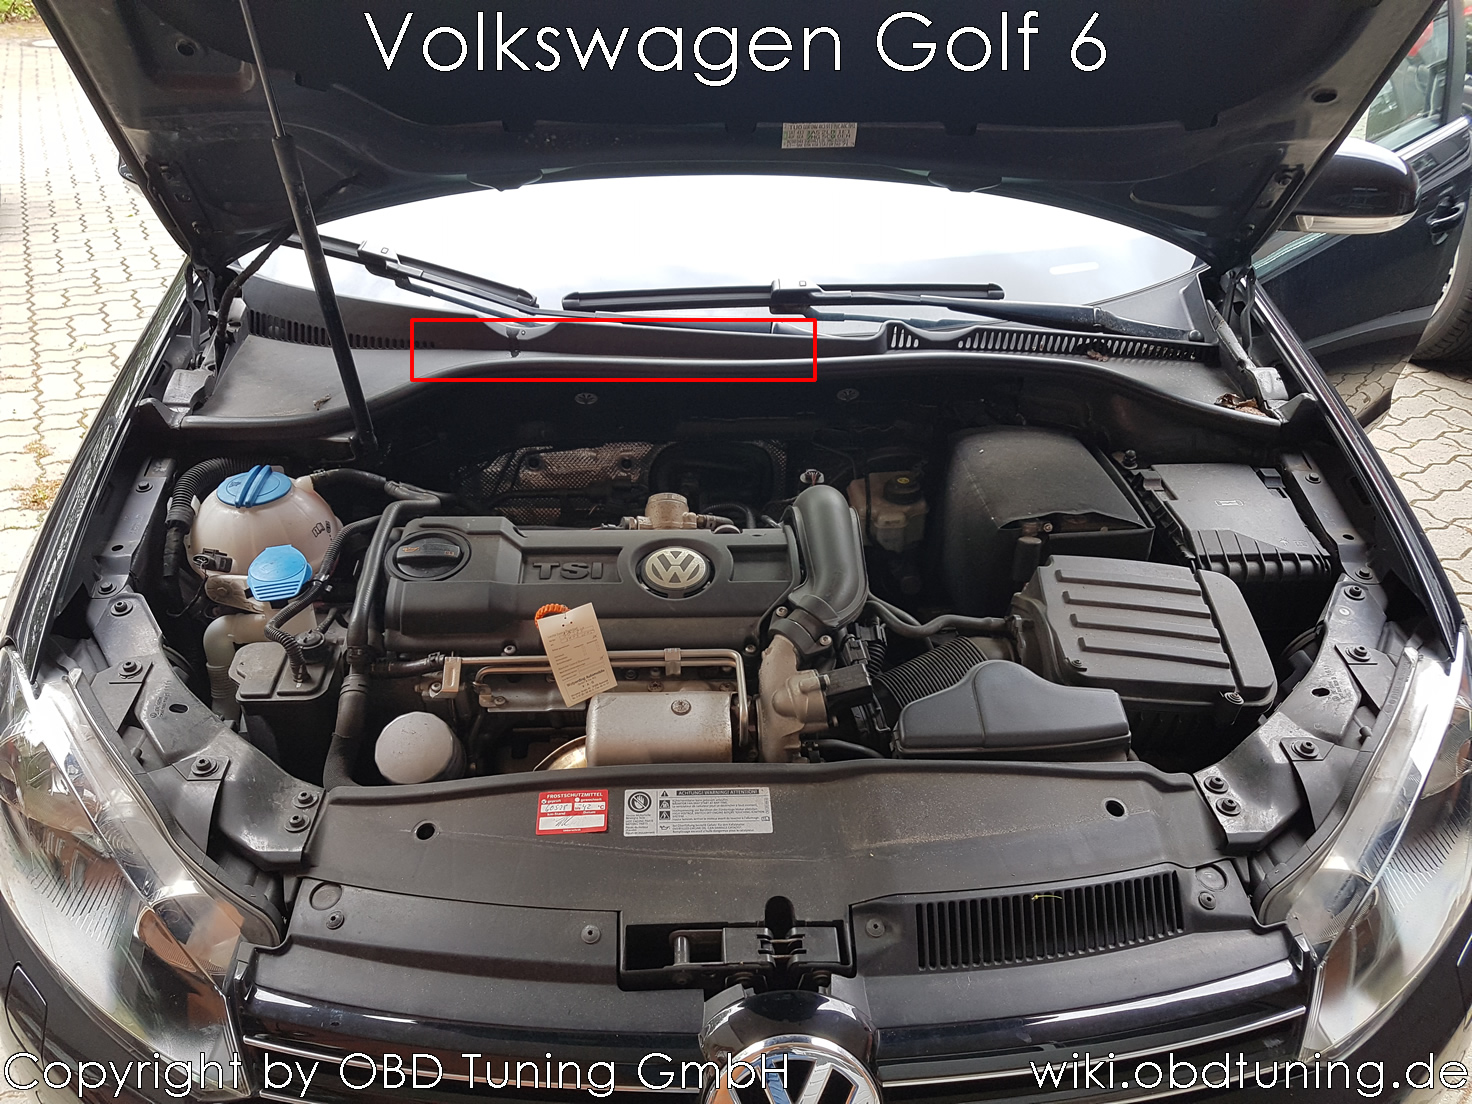 Volkswagen Golf 6 ECU.jpg